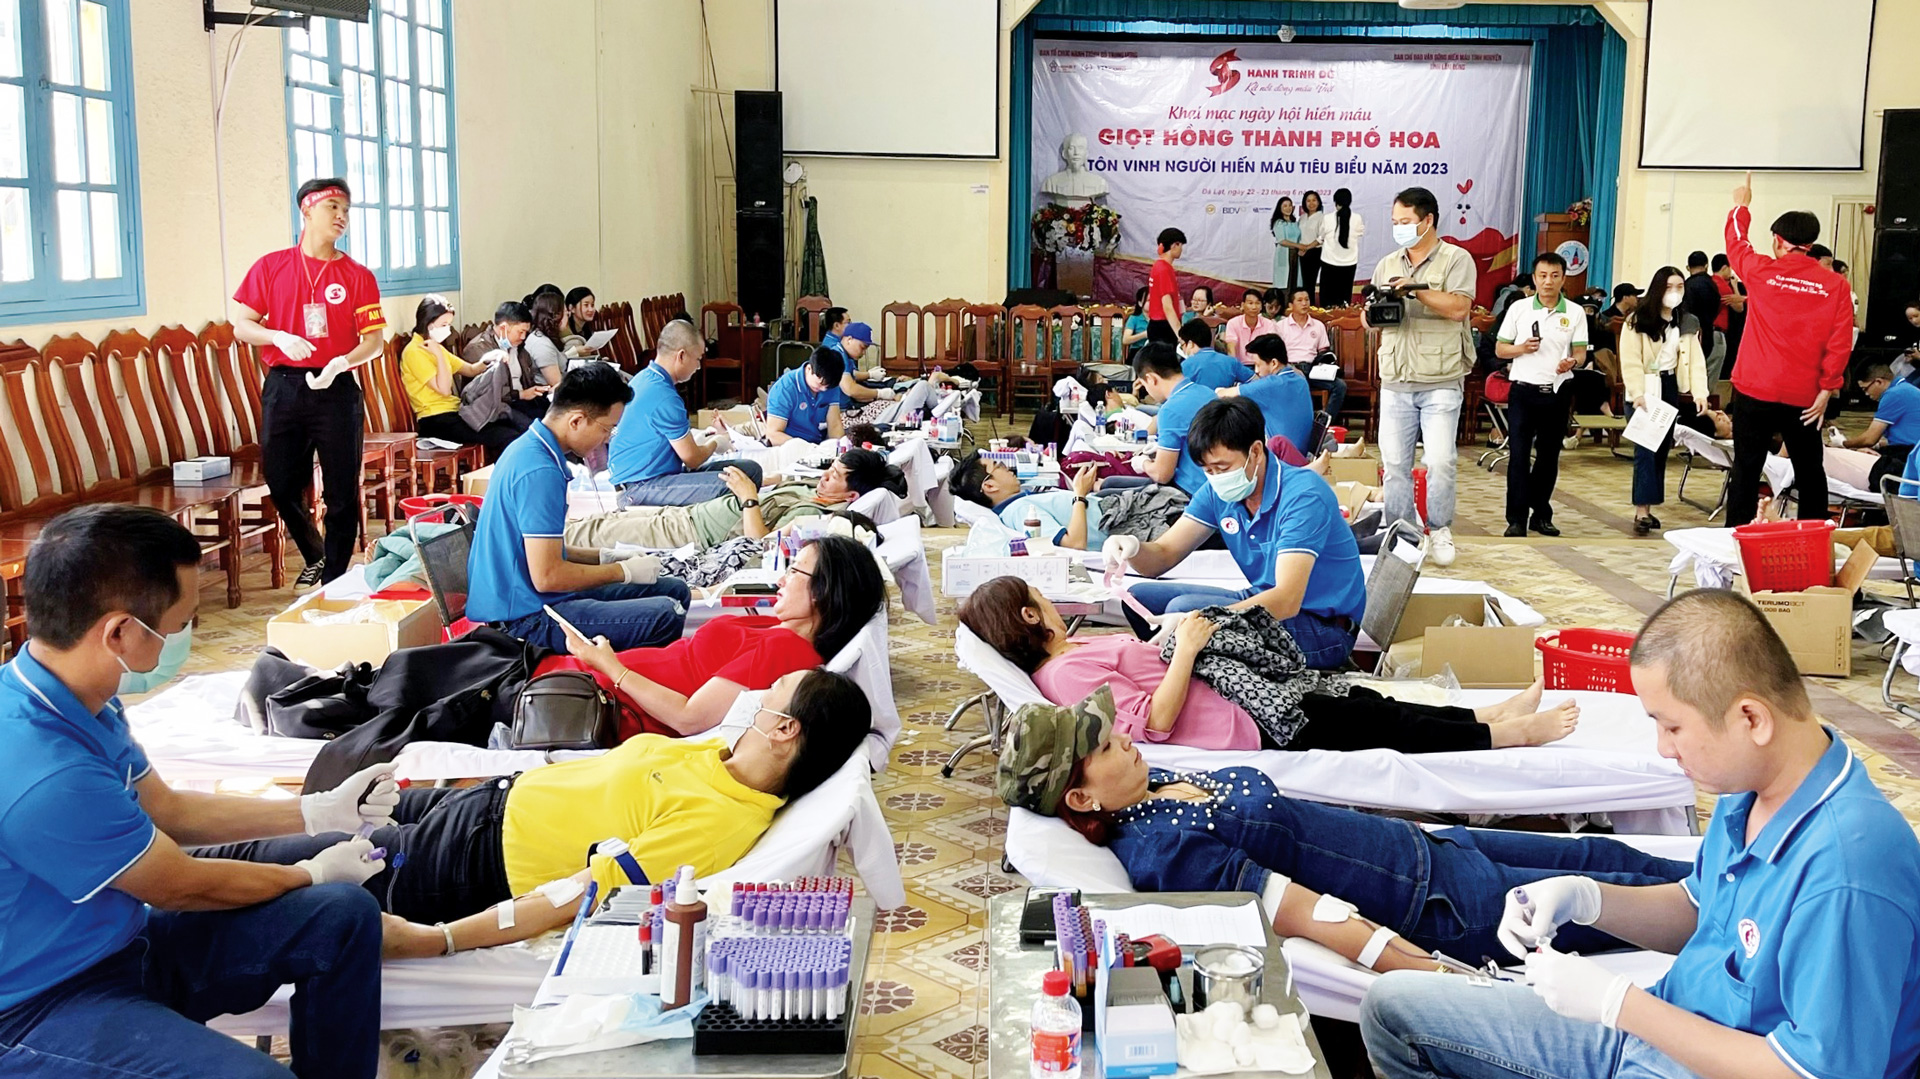 Lâm Đồng là một trong 5 tỉnh, thành phố trong cả nước tổ chức xuyên suốt 12 kỳ Hành trình Đỏ,
Ngày hội Hiến máu  Giọt hồng thành phố Hoa